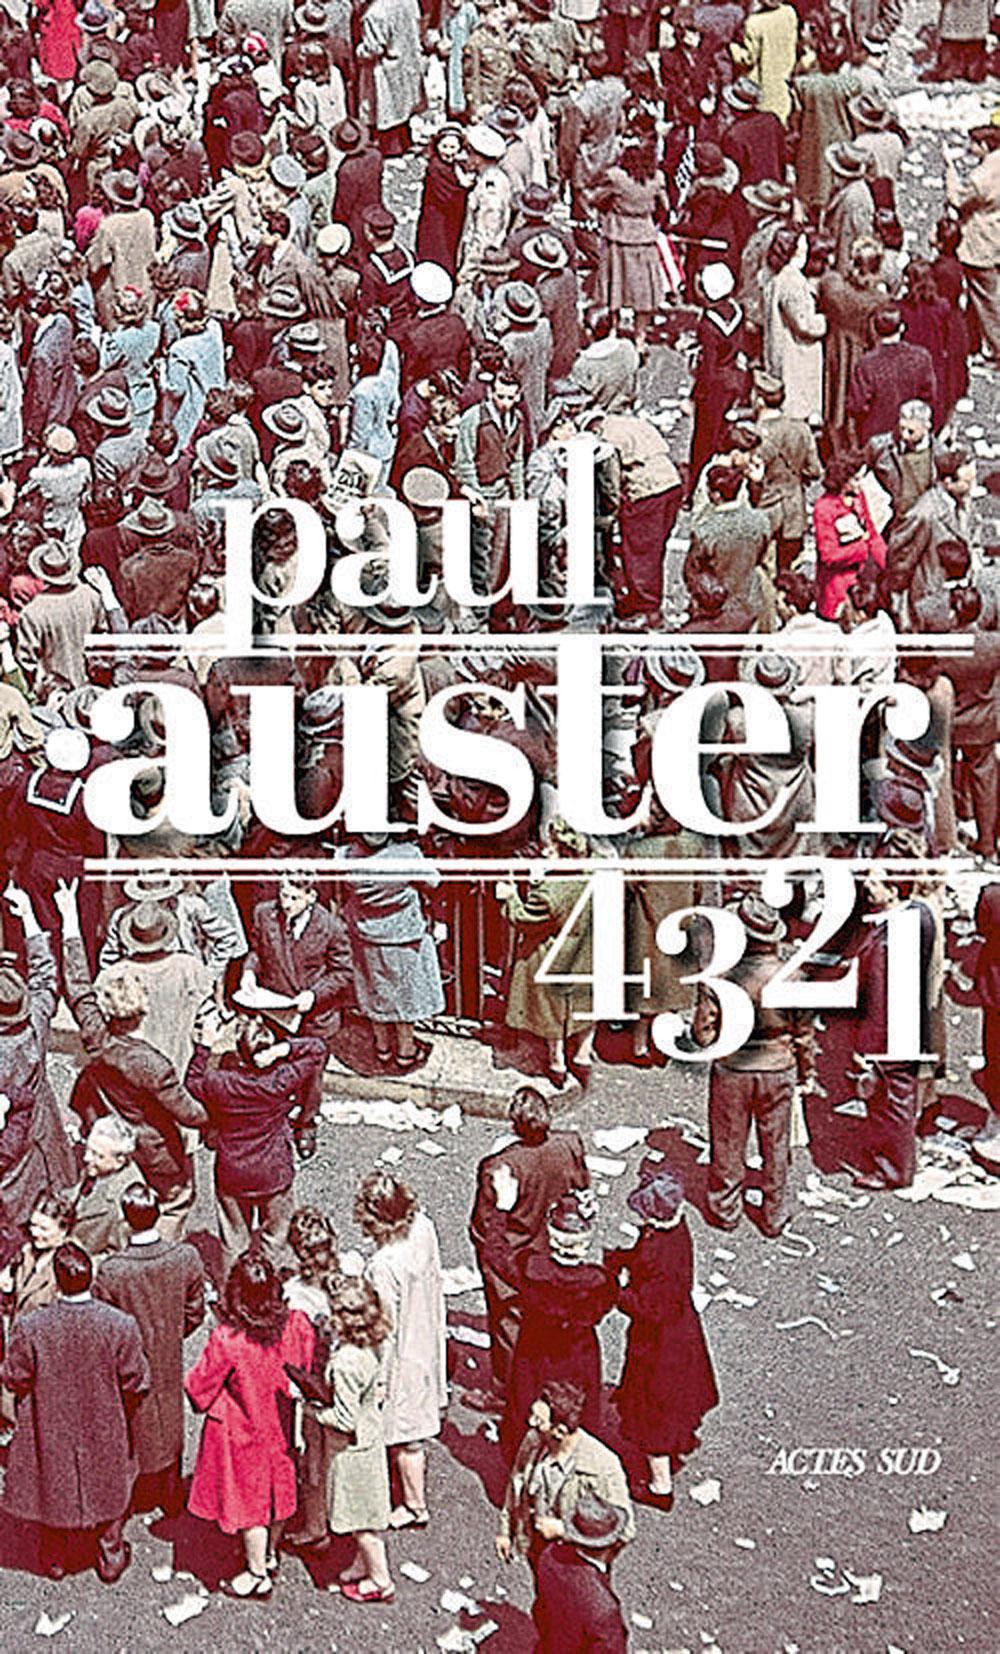 Paul Auster: roman monumental pour l'écrivain culte